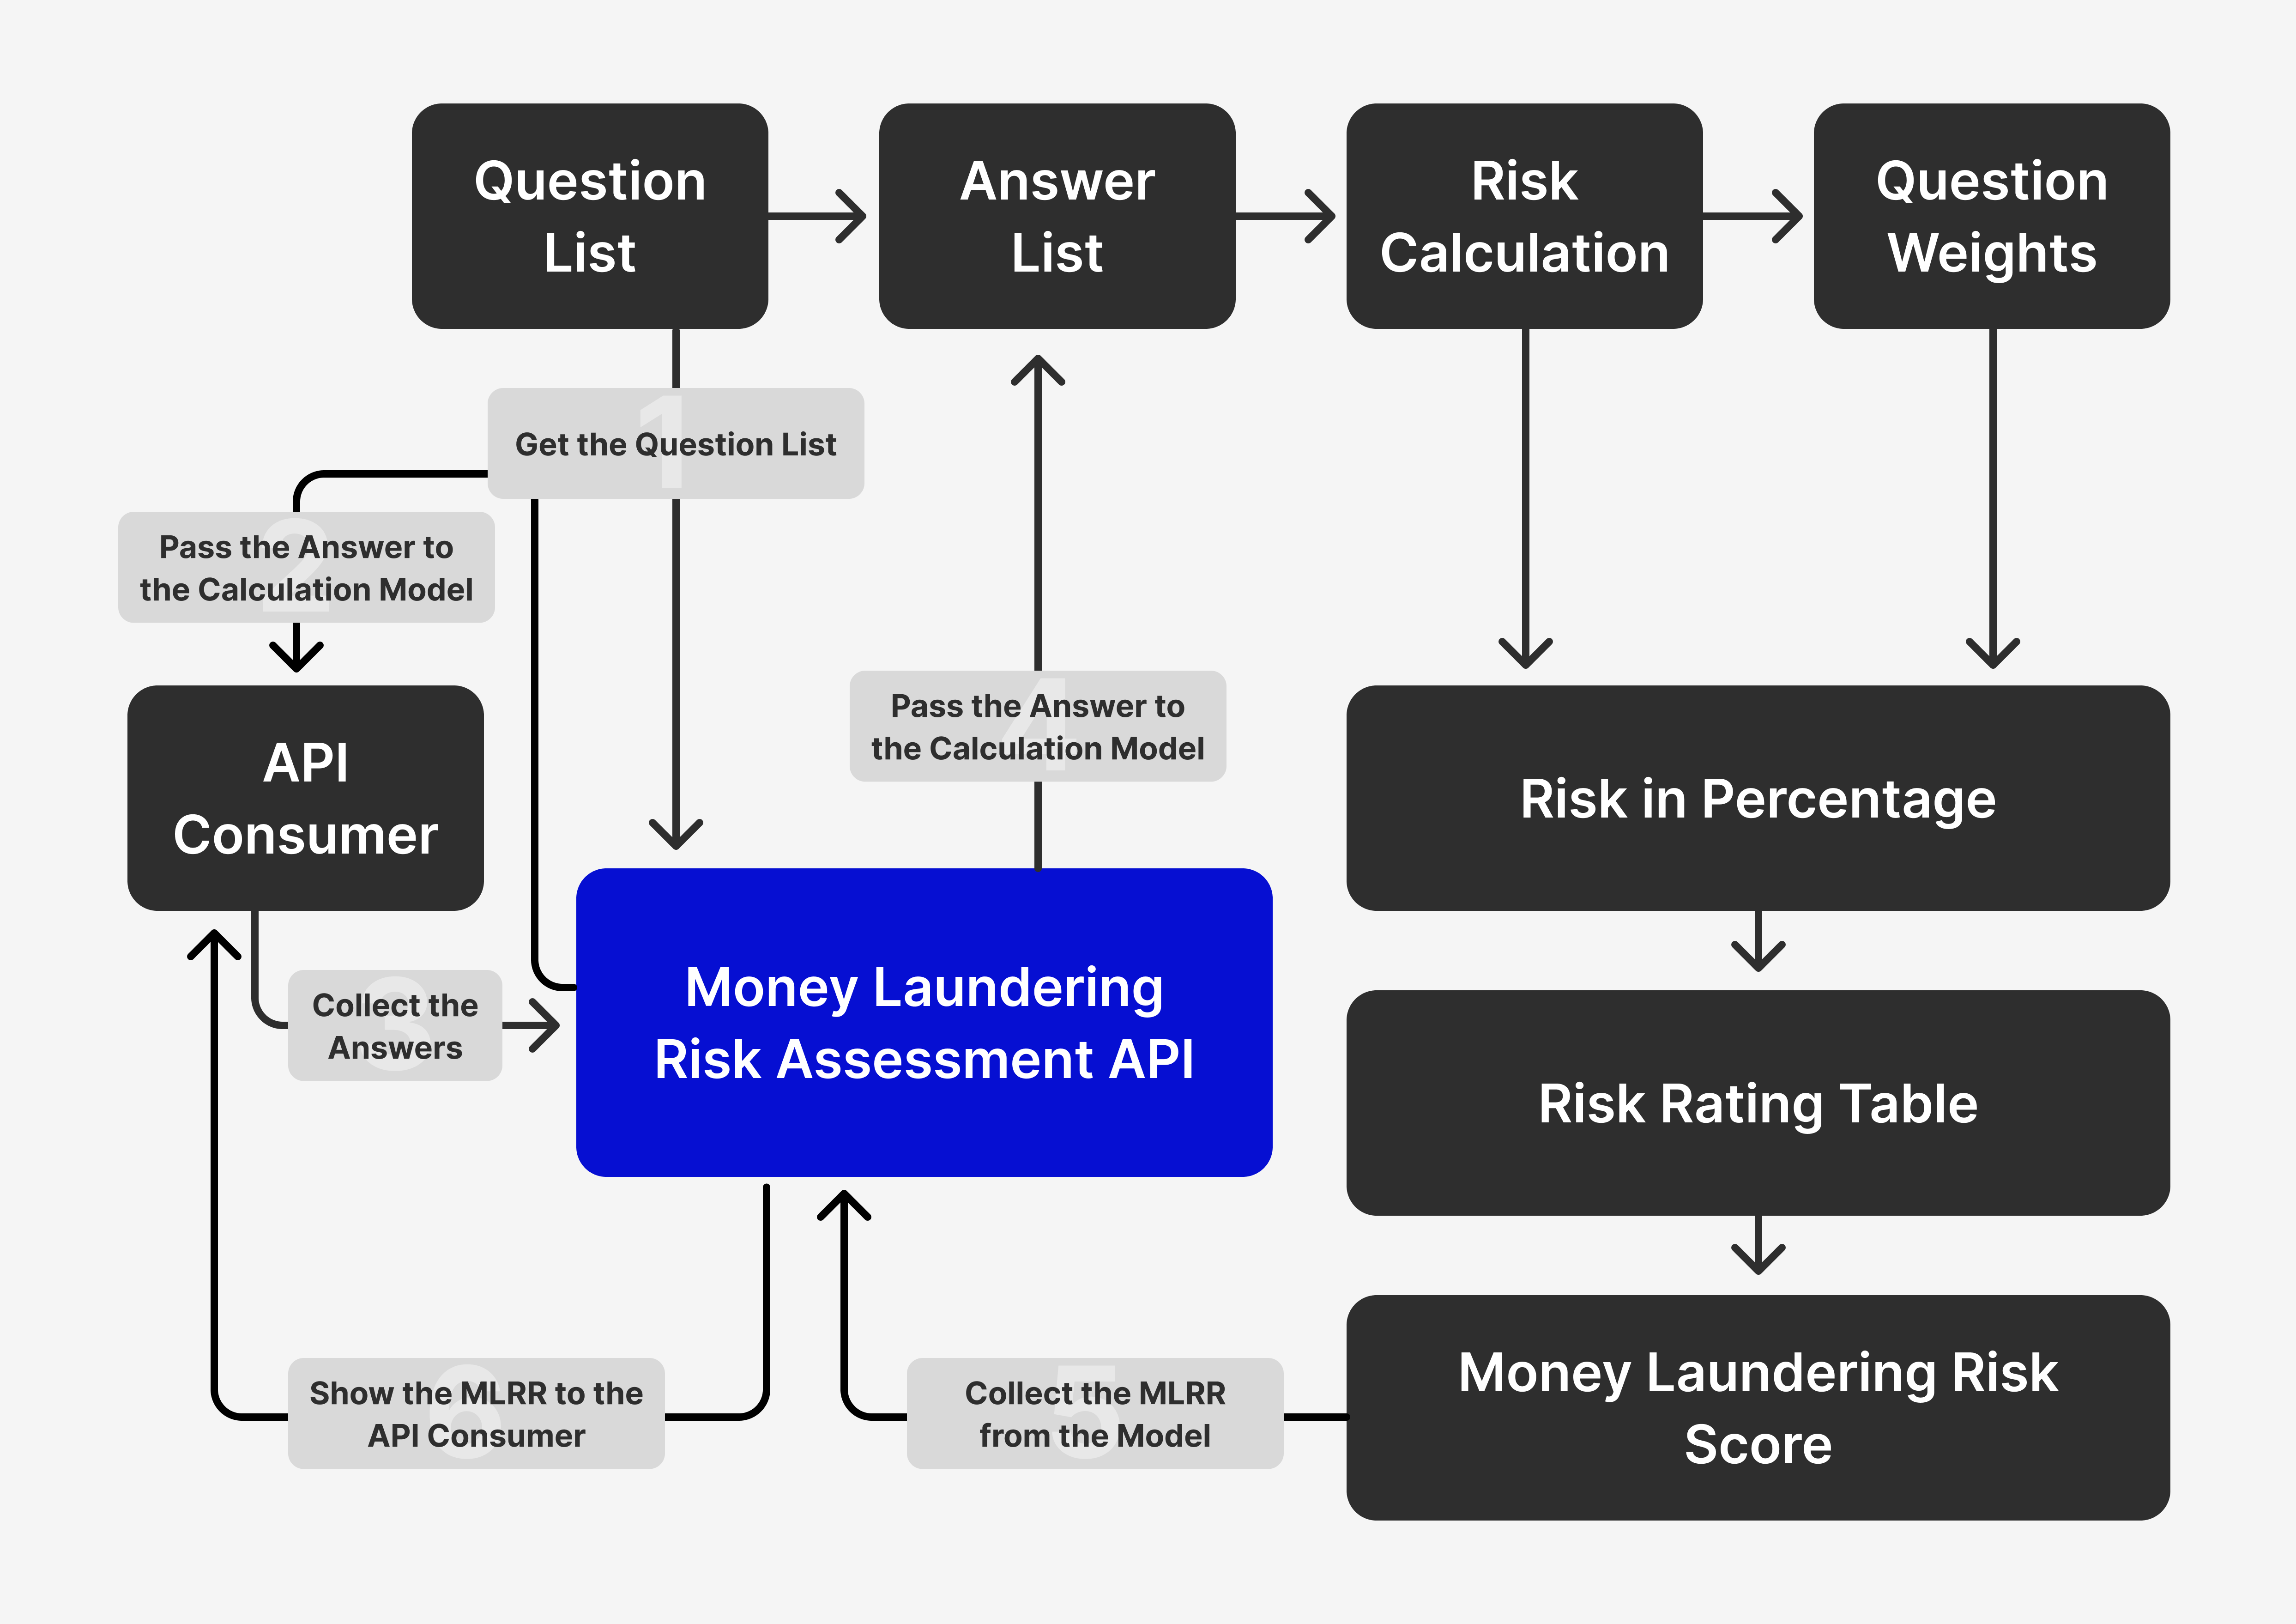 Money Laundering Risk Assessment API